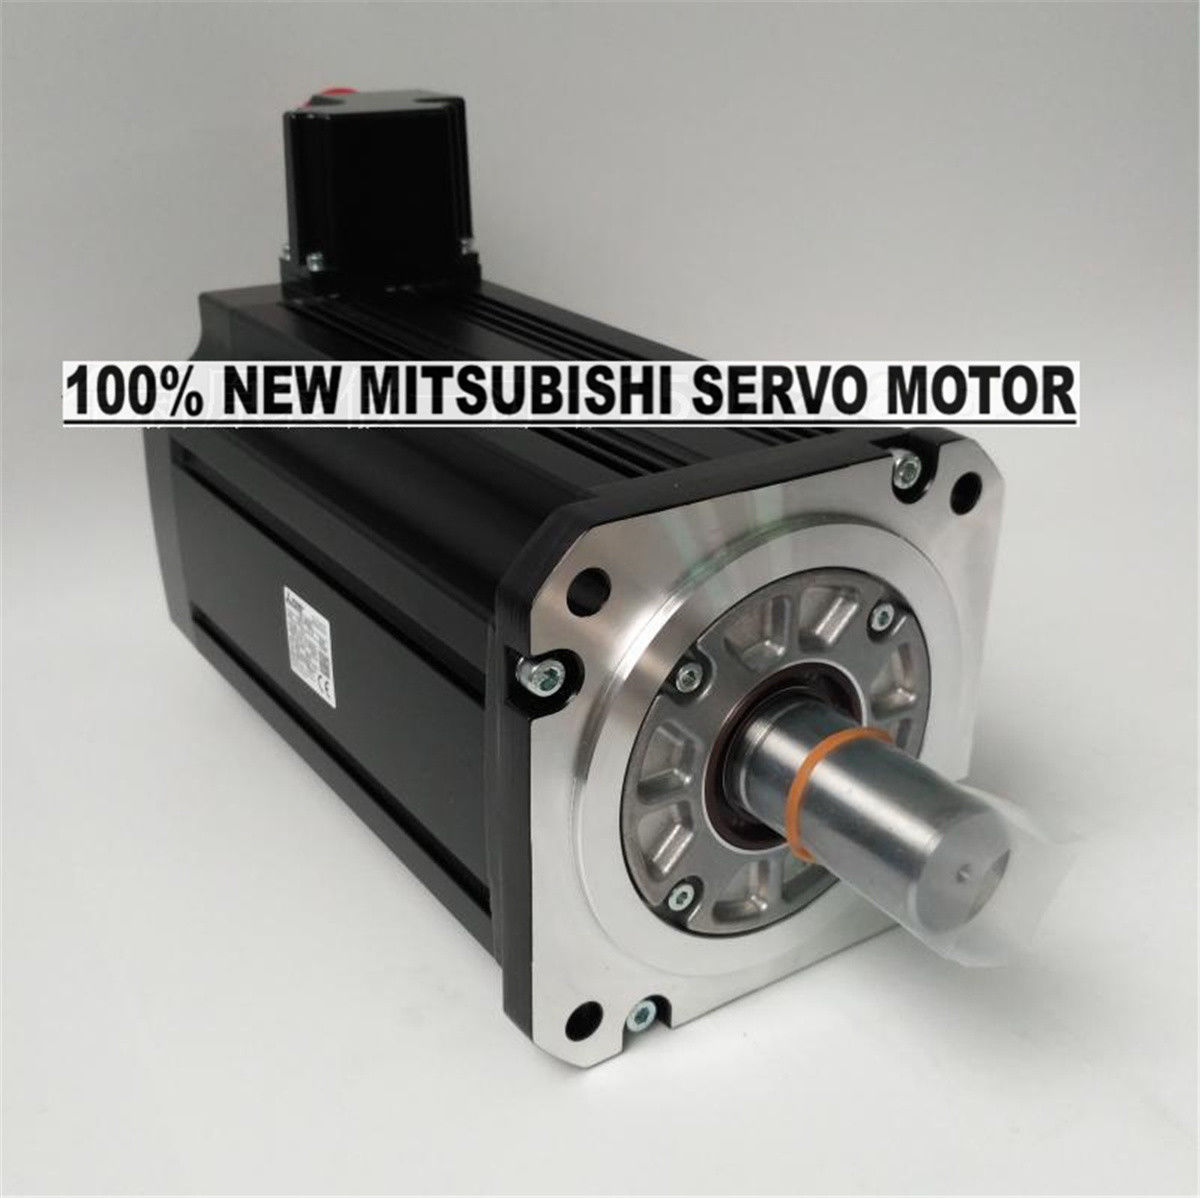 NEW Mitsubishi Servo Motor HG-JR503 in box HGJR503 - Click Image to Close